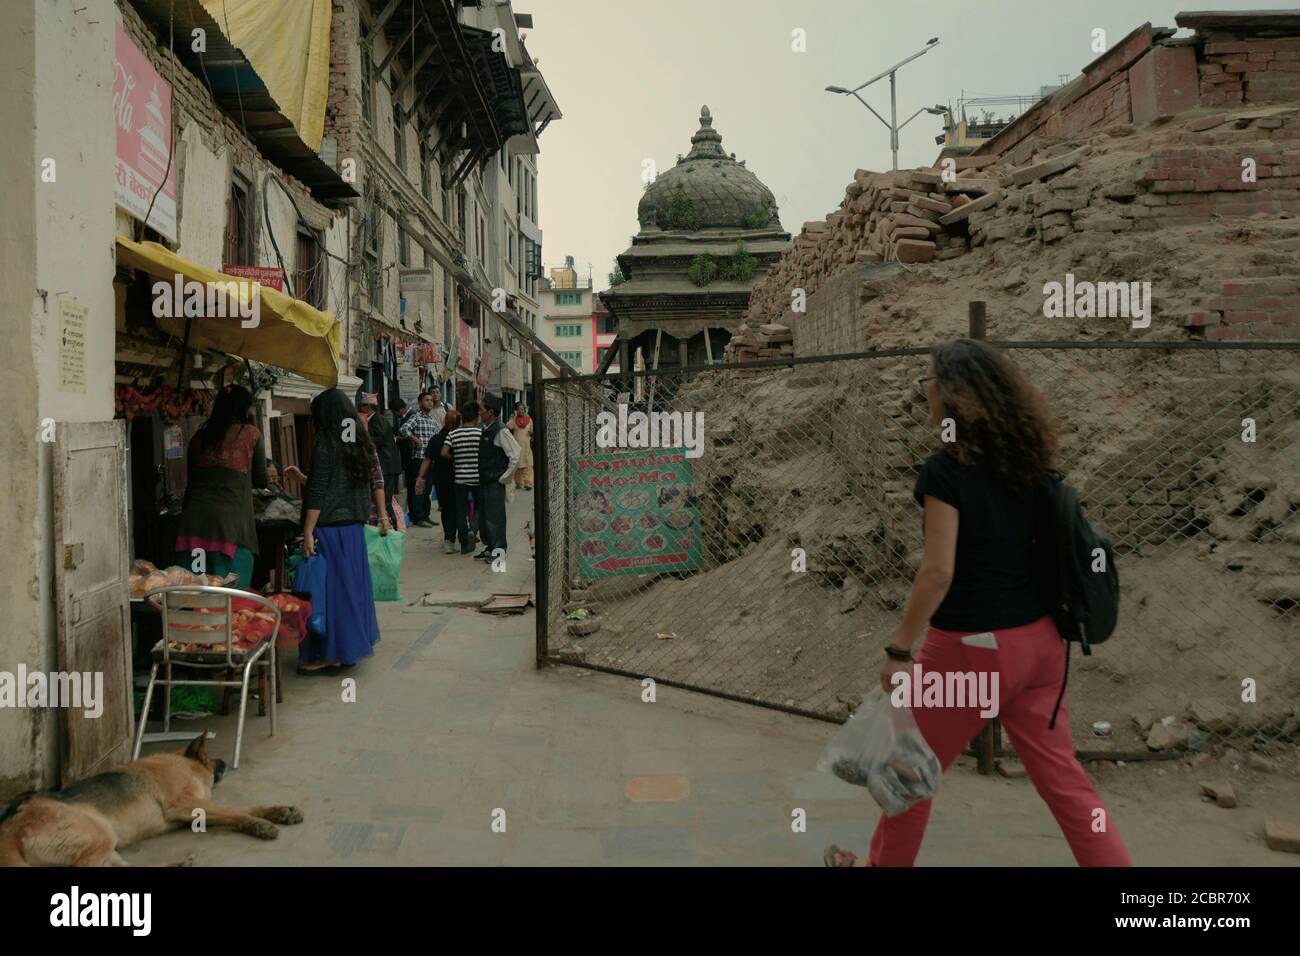 Fußgänger zu Fuß auf einer Gasse zwischen Wohngebiet und einem kulturellen Erbe Ort durch die Erdbeben 2015 in Kathmandu, Nepal betroffen. Stockfoto